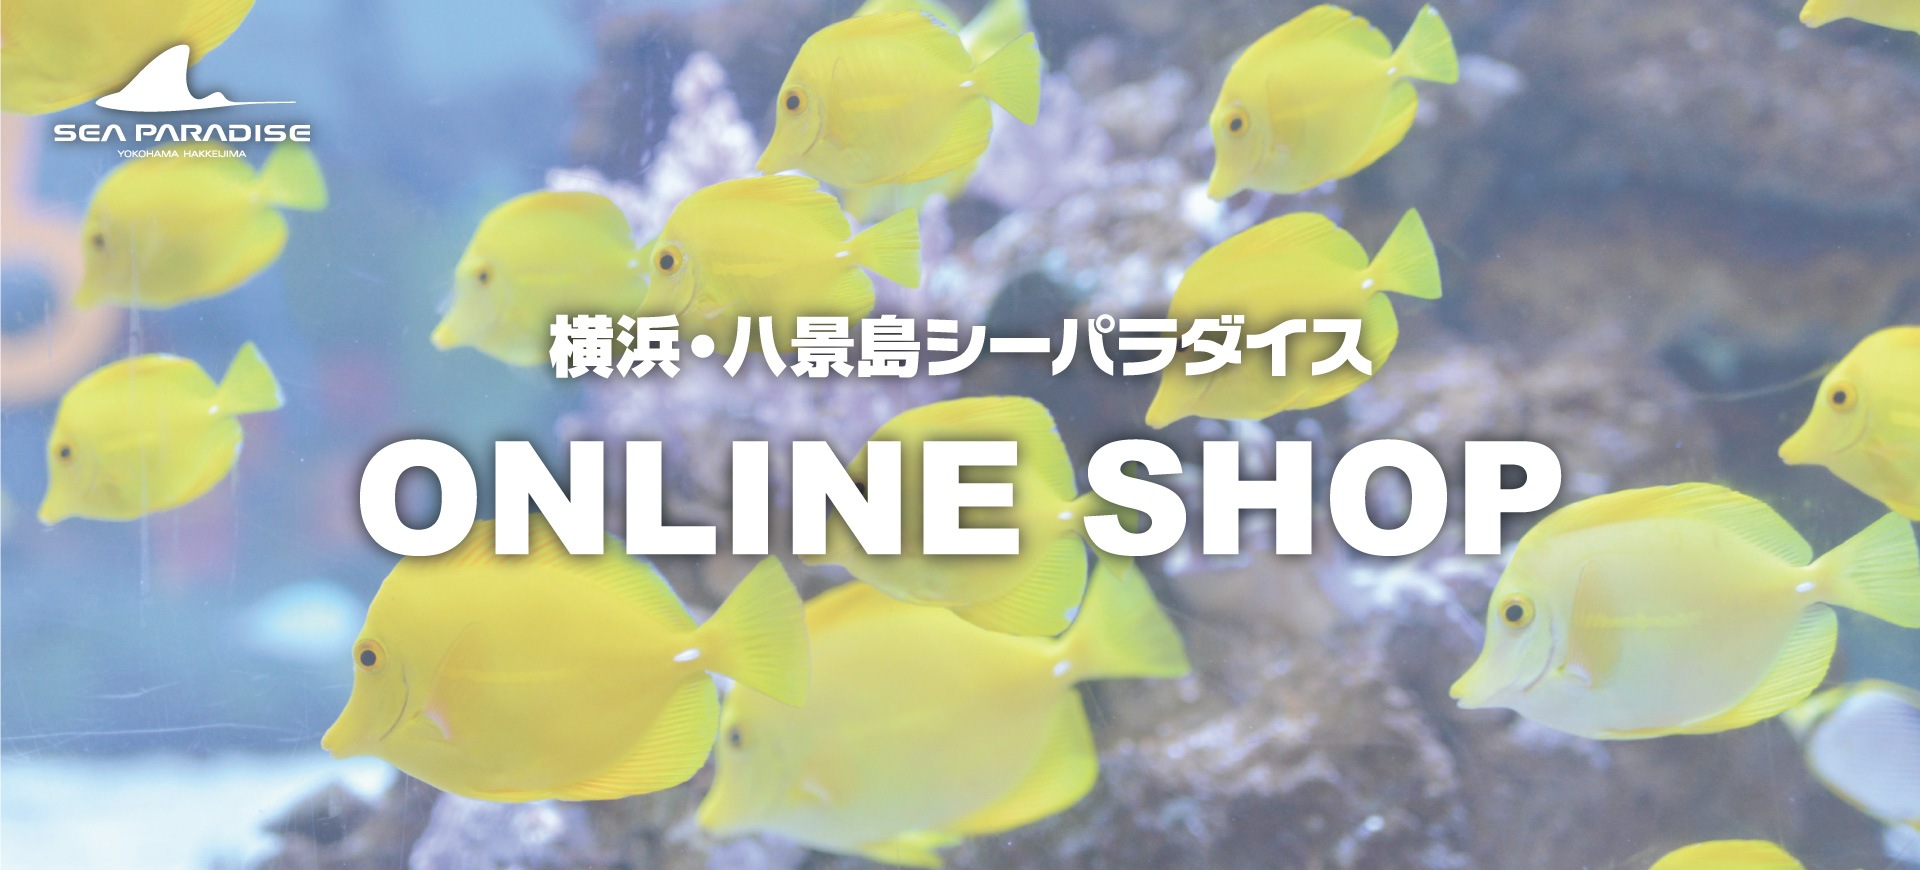 横浜・八景島シーパラダイス ONLINE SHOP